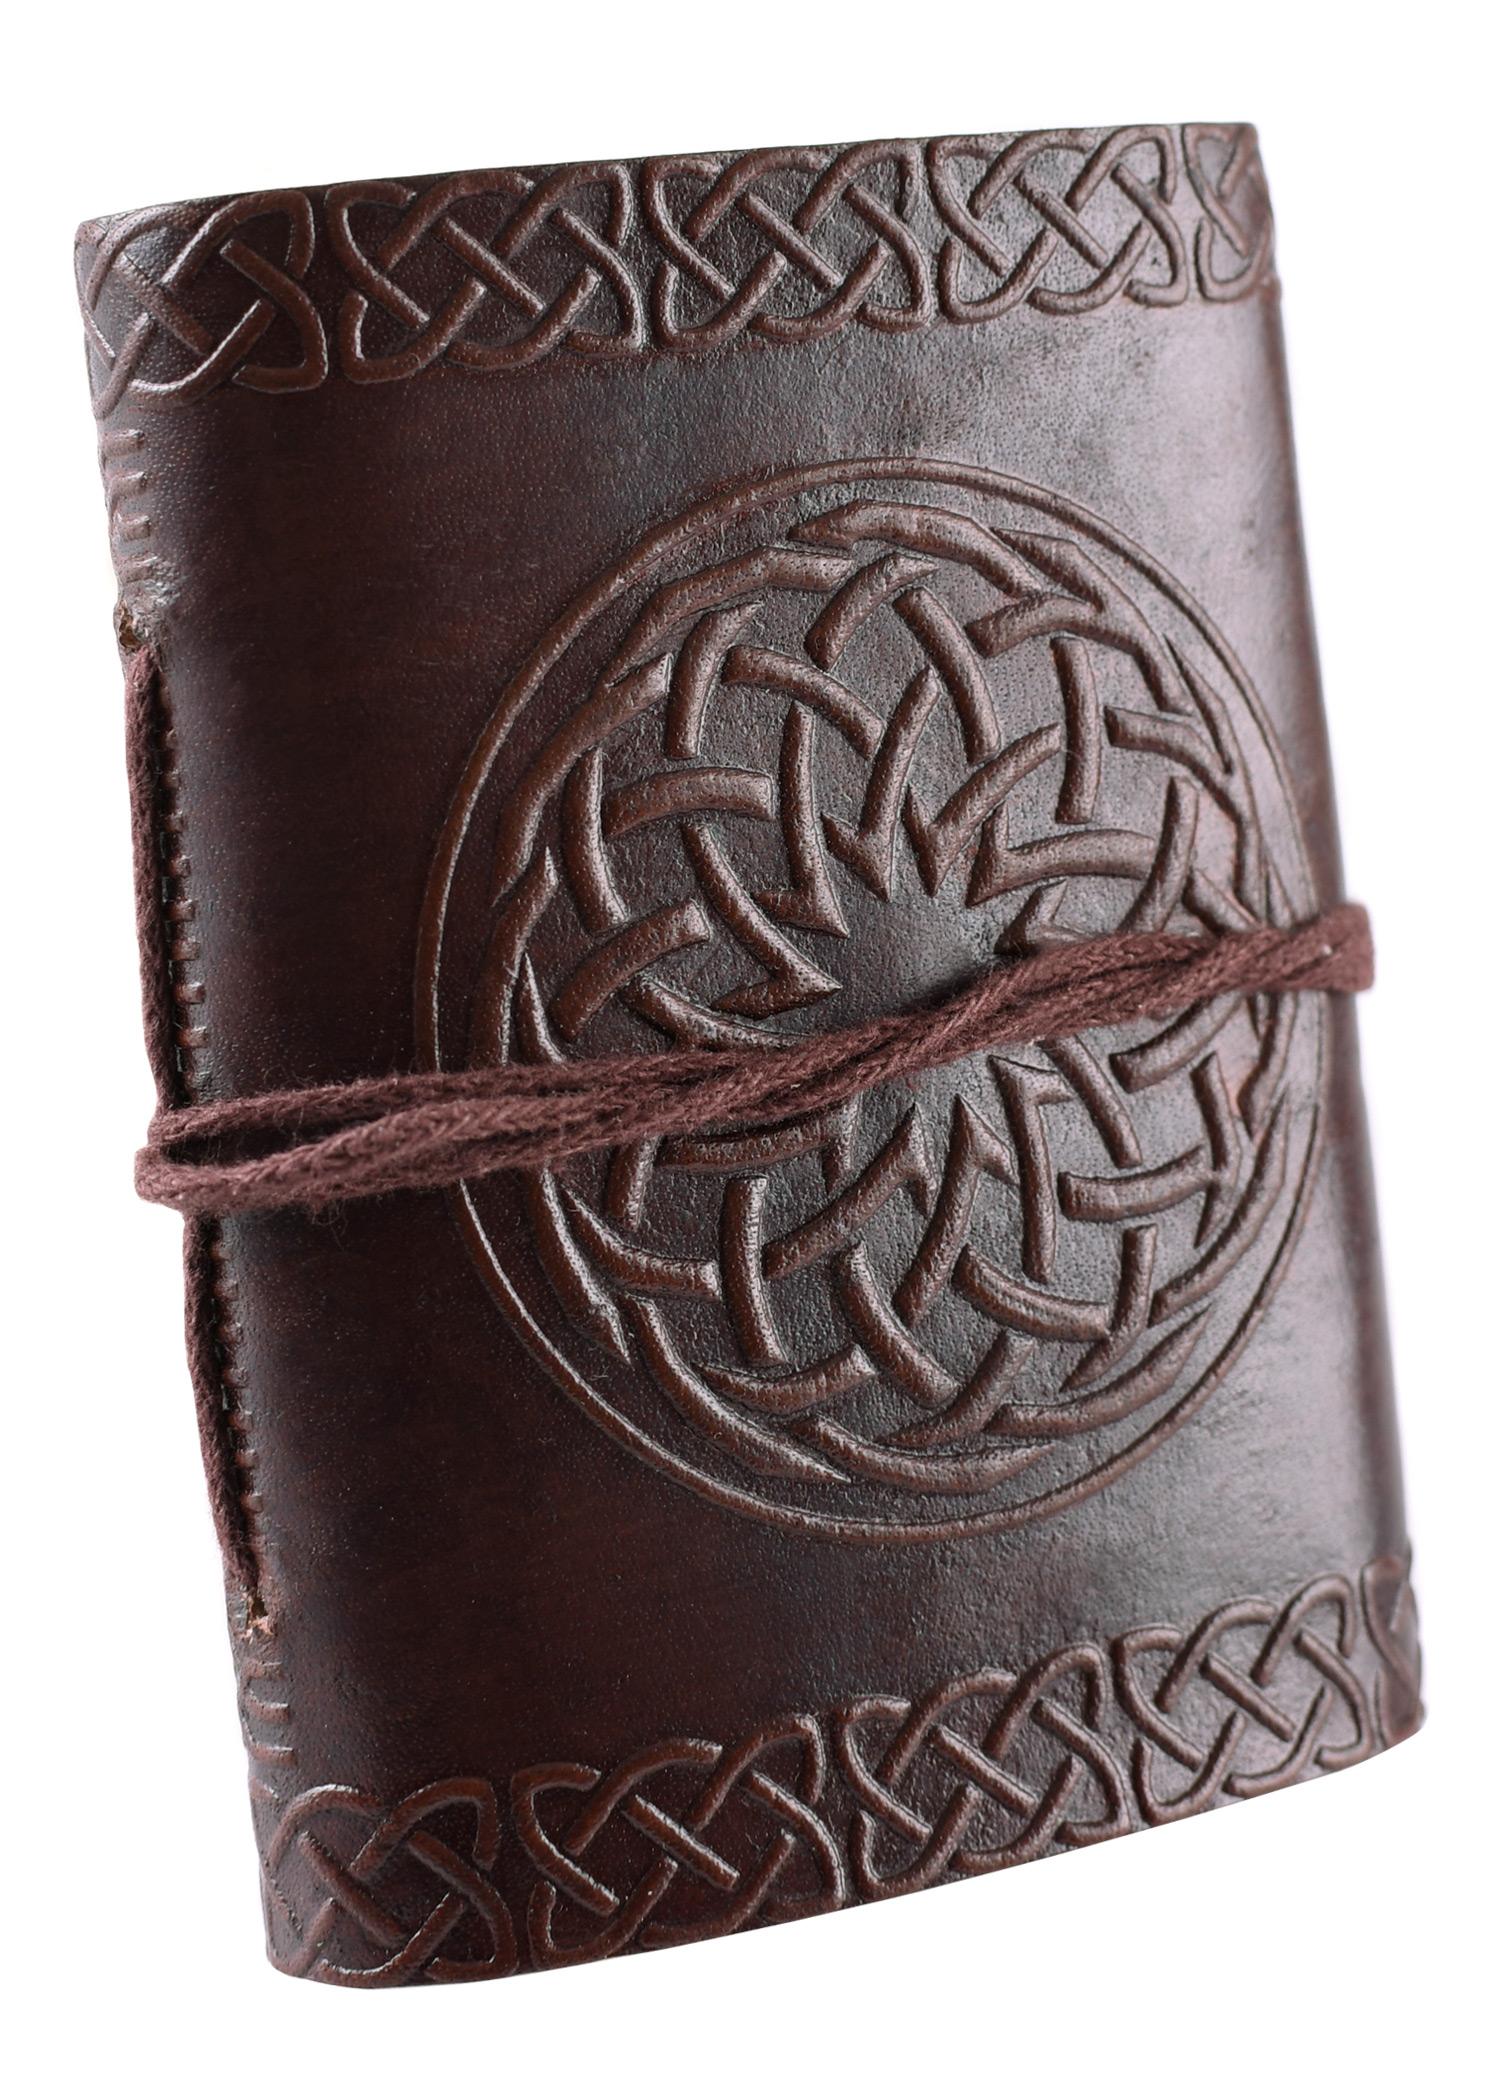 Kleines Notizbuch / Tagebuch mit geprägtem Ledereinband, ca. 9 x